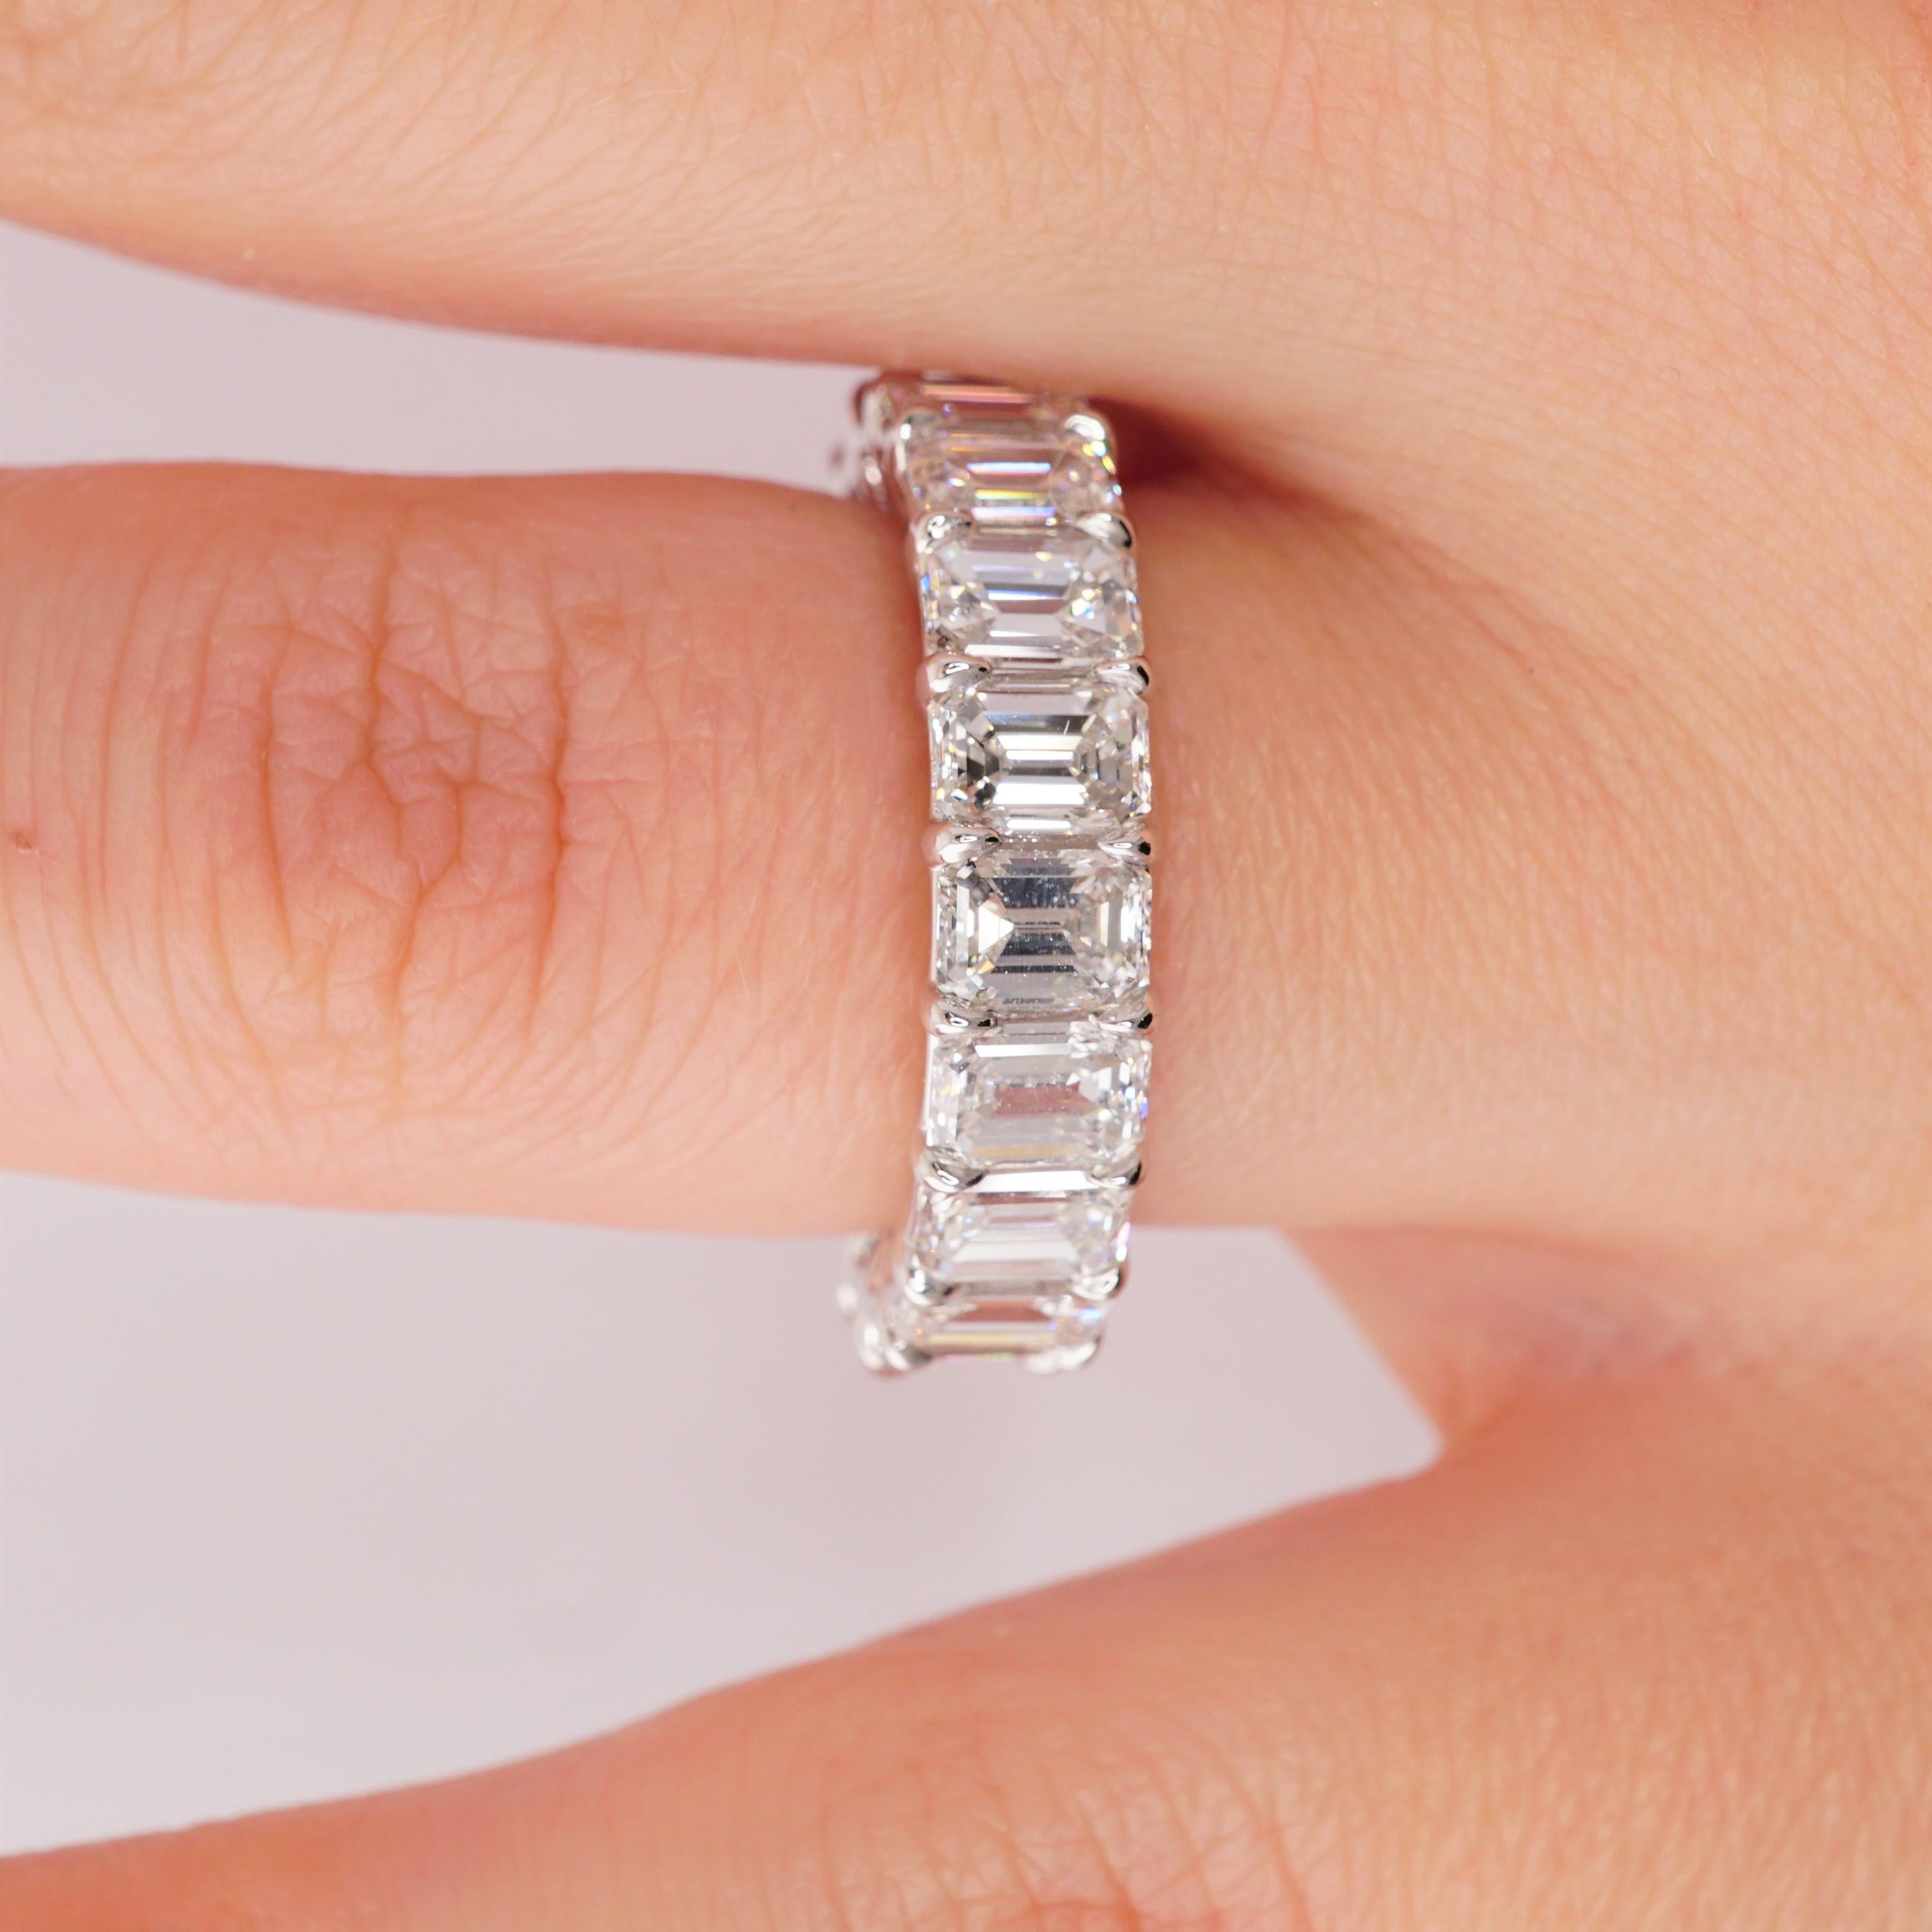 Diamant Eternity Band in Platin gefasst. 20 Diamanten im Smaragdschliff sind D-E-F-G VVS2-VS1. Karatgewicht: 6,22 ct. Alle Steine sind GIA-zertifiziert. Gesamtgewicht des Rings 6,50 Gramm. Ringgröße 5,75. Die Breite des Bandes beträgt 5,6 mm. Kann